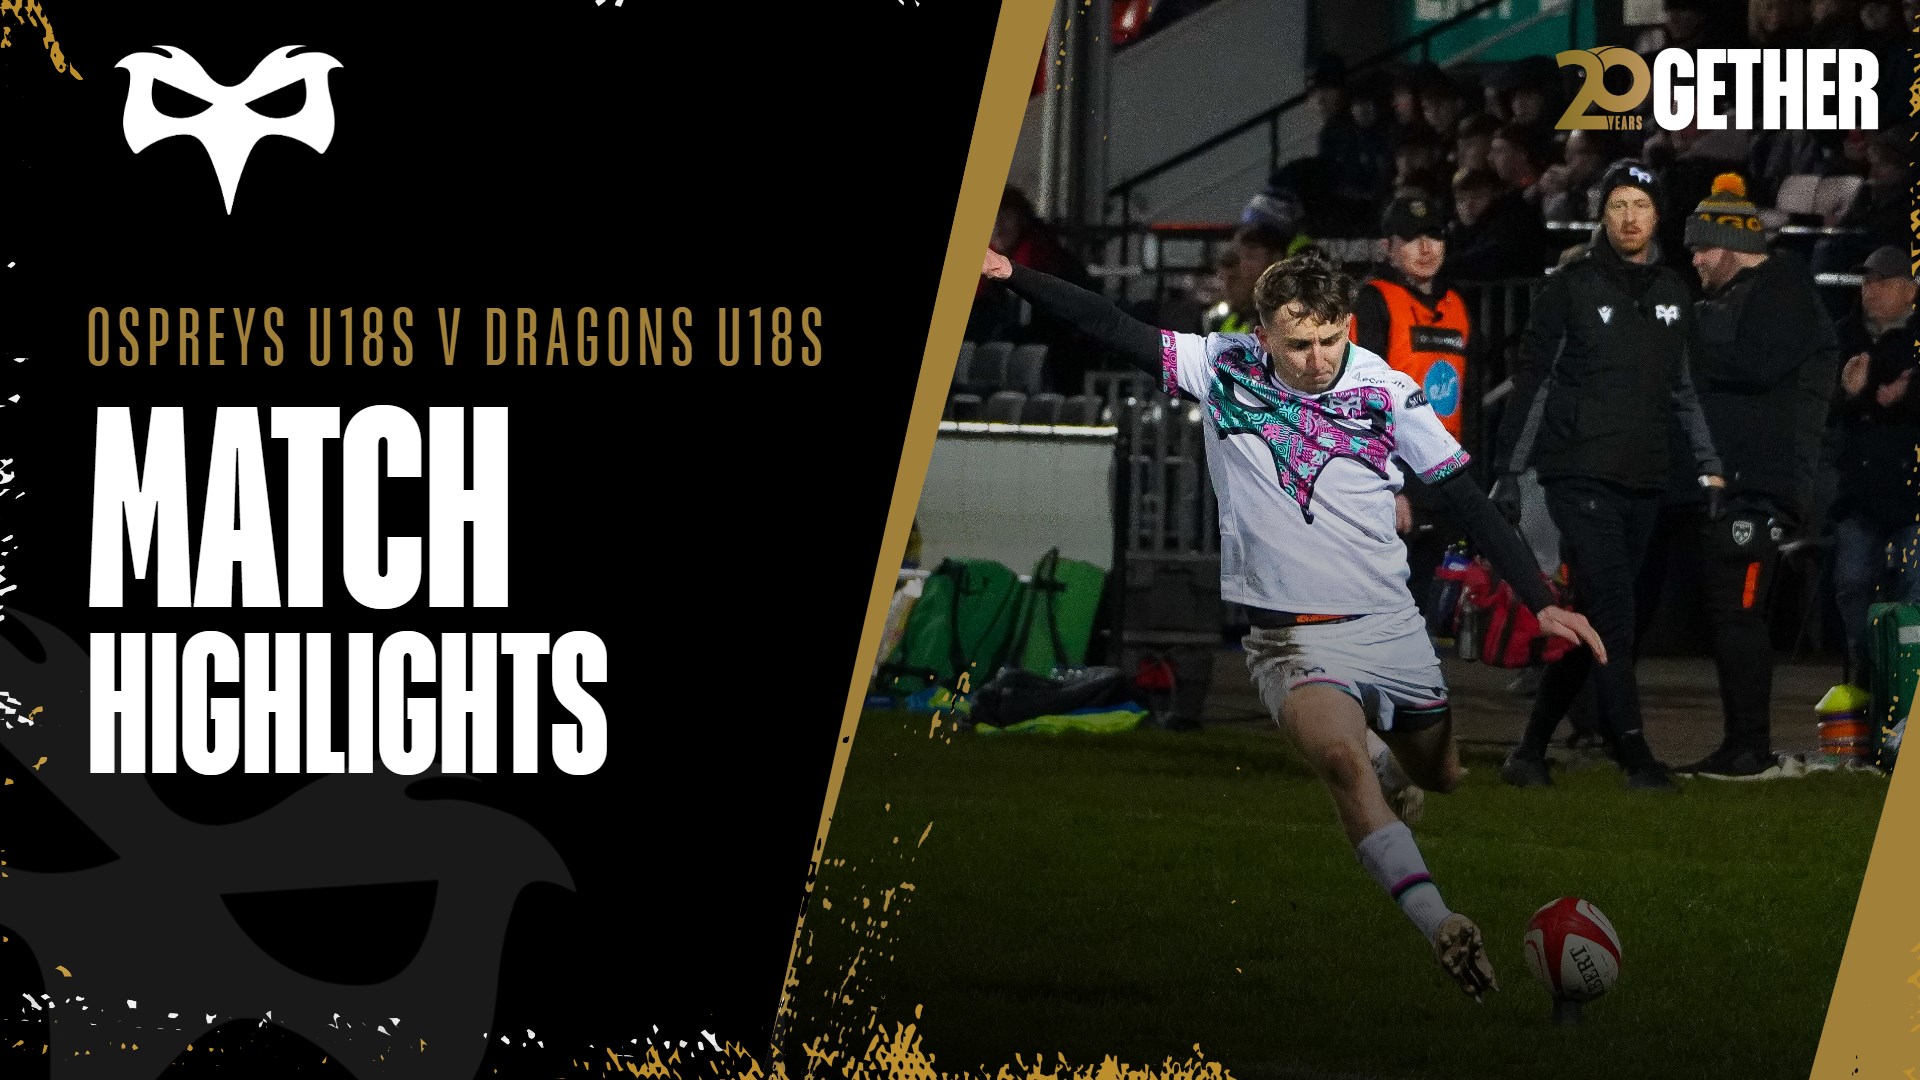 Match Highlights: Ospreys U18s v Dragons U18s